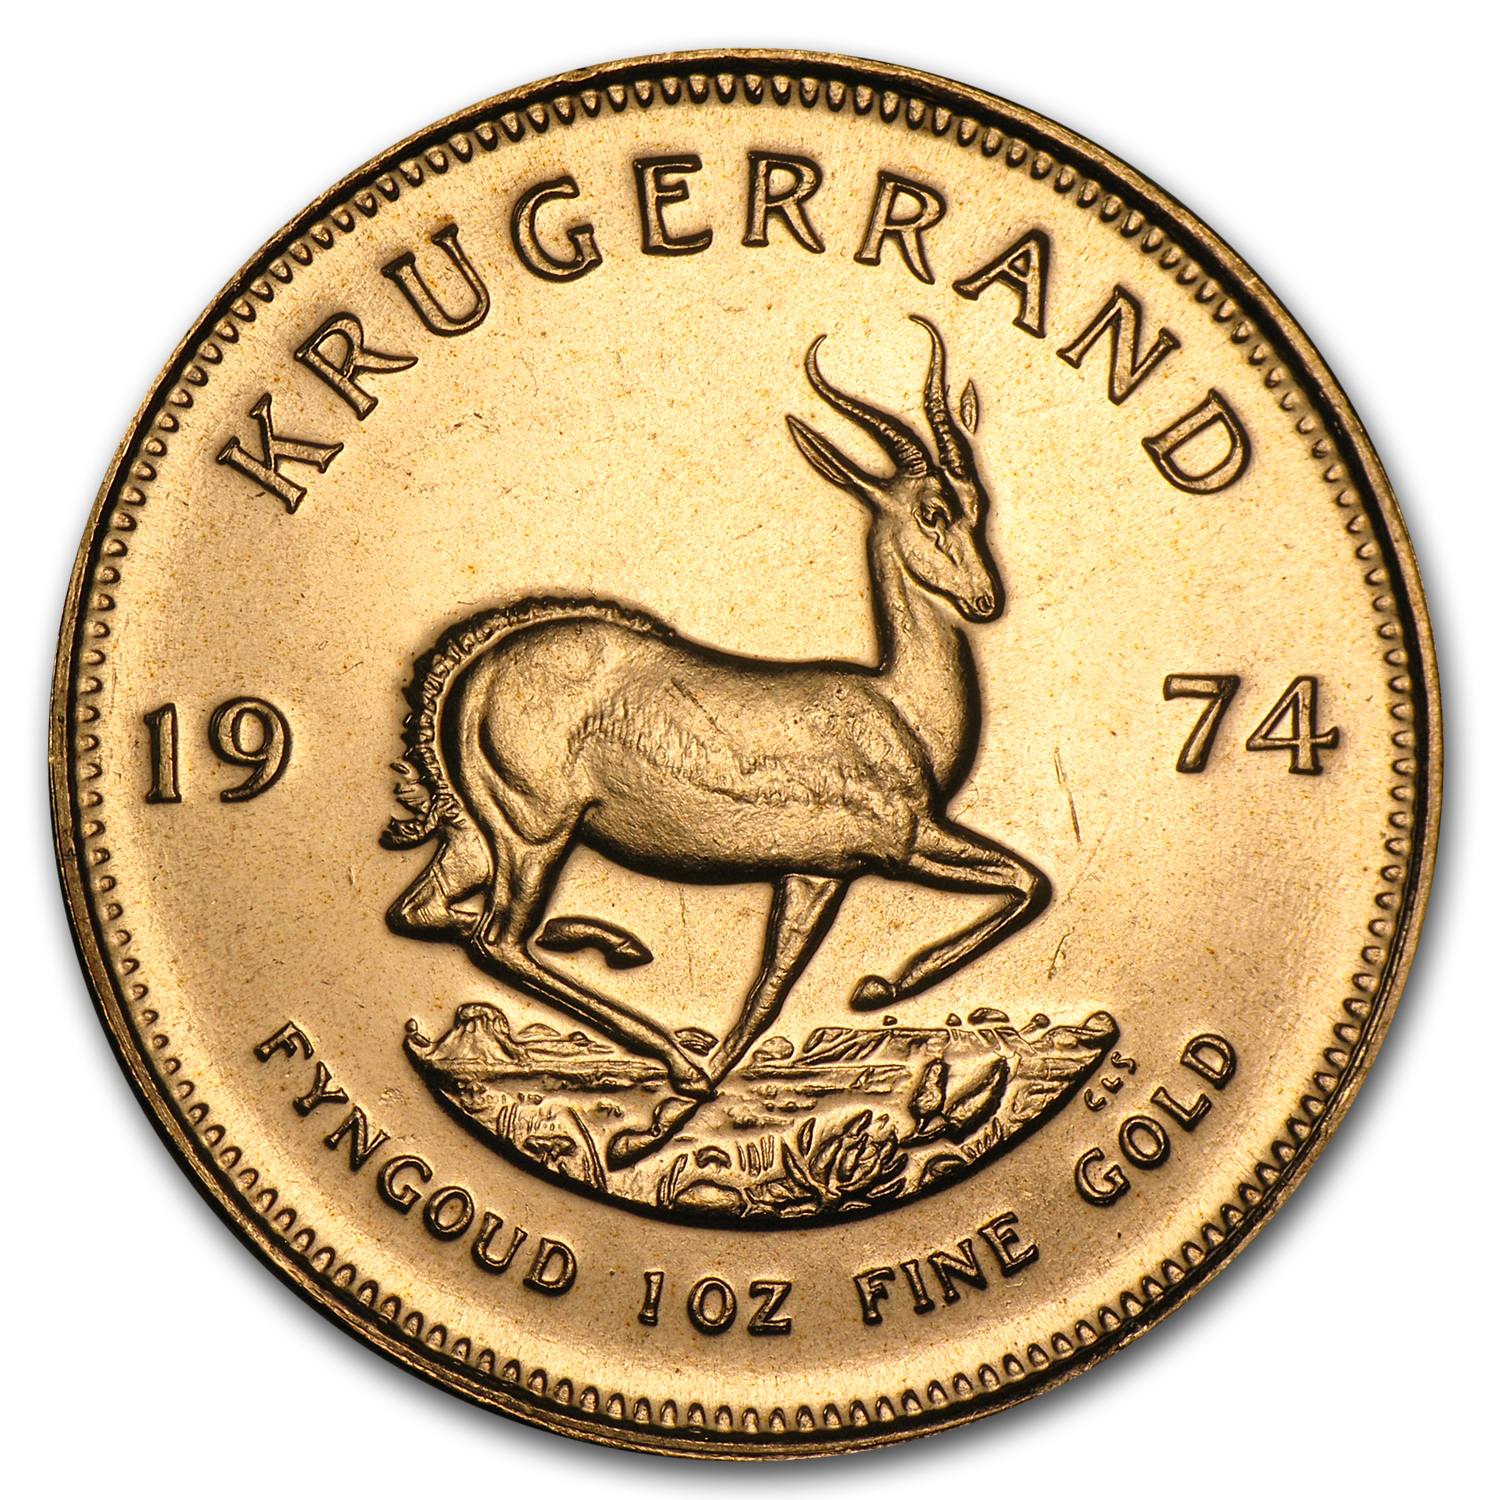 Buy 1974 South Africa 1 oz Gold Krugerrand BU